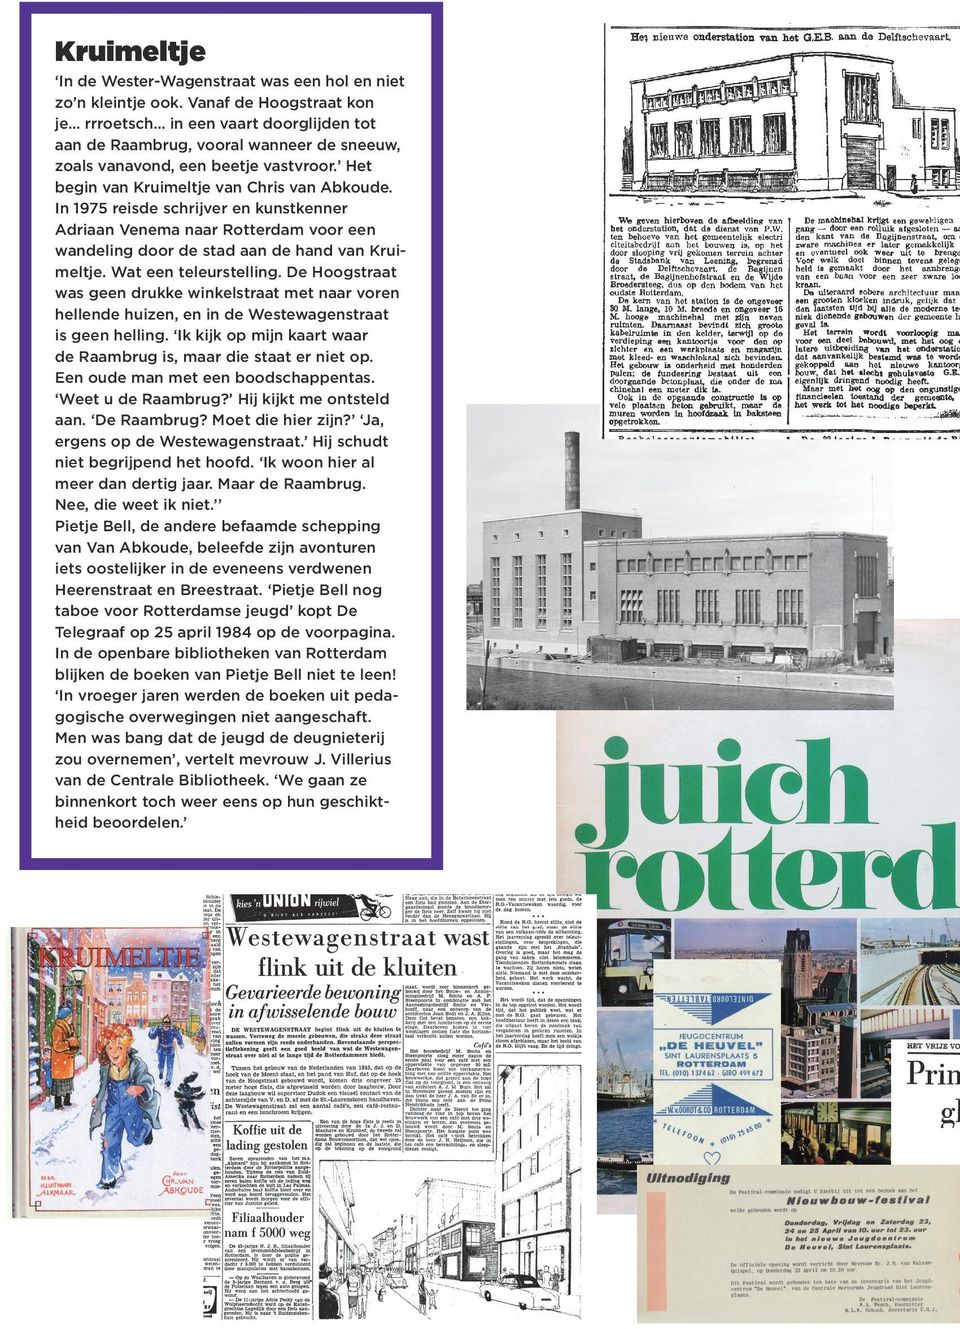 in 1975 reisde schrijver en kunstkenner Adriaan Venema naar rotterdam voor een wandeling door de stad aan de hand van Kruimeltje. Wat een teleurstelling.